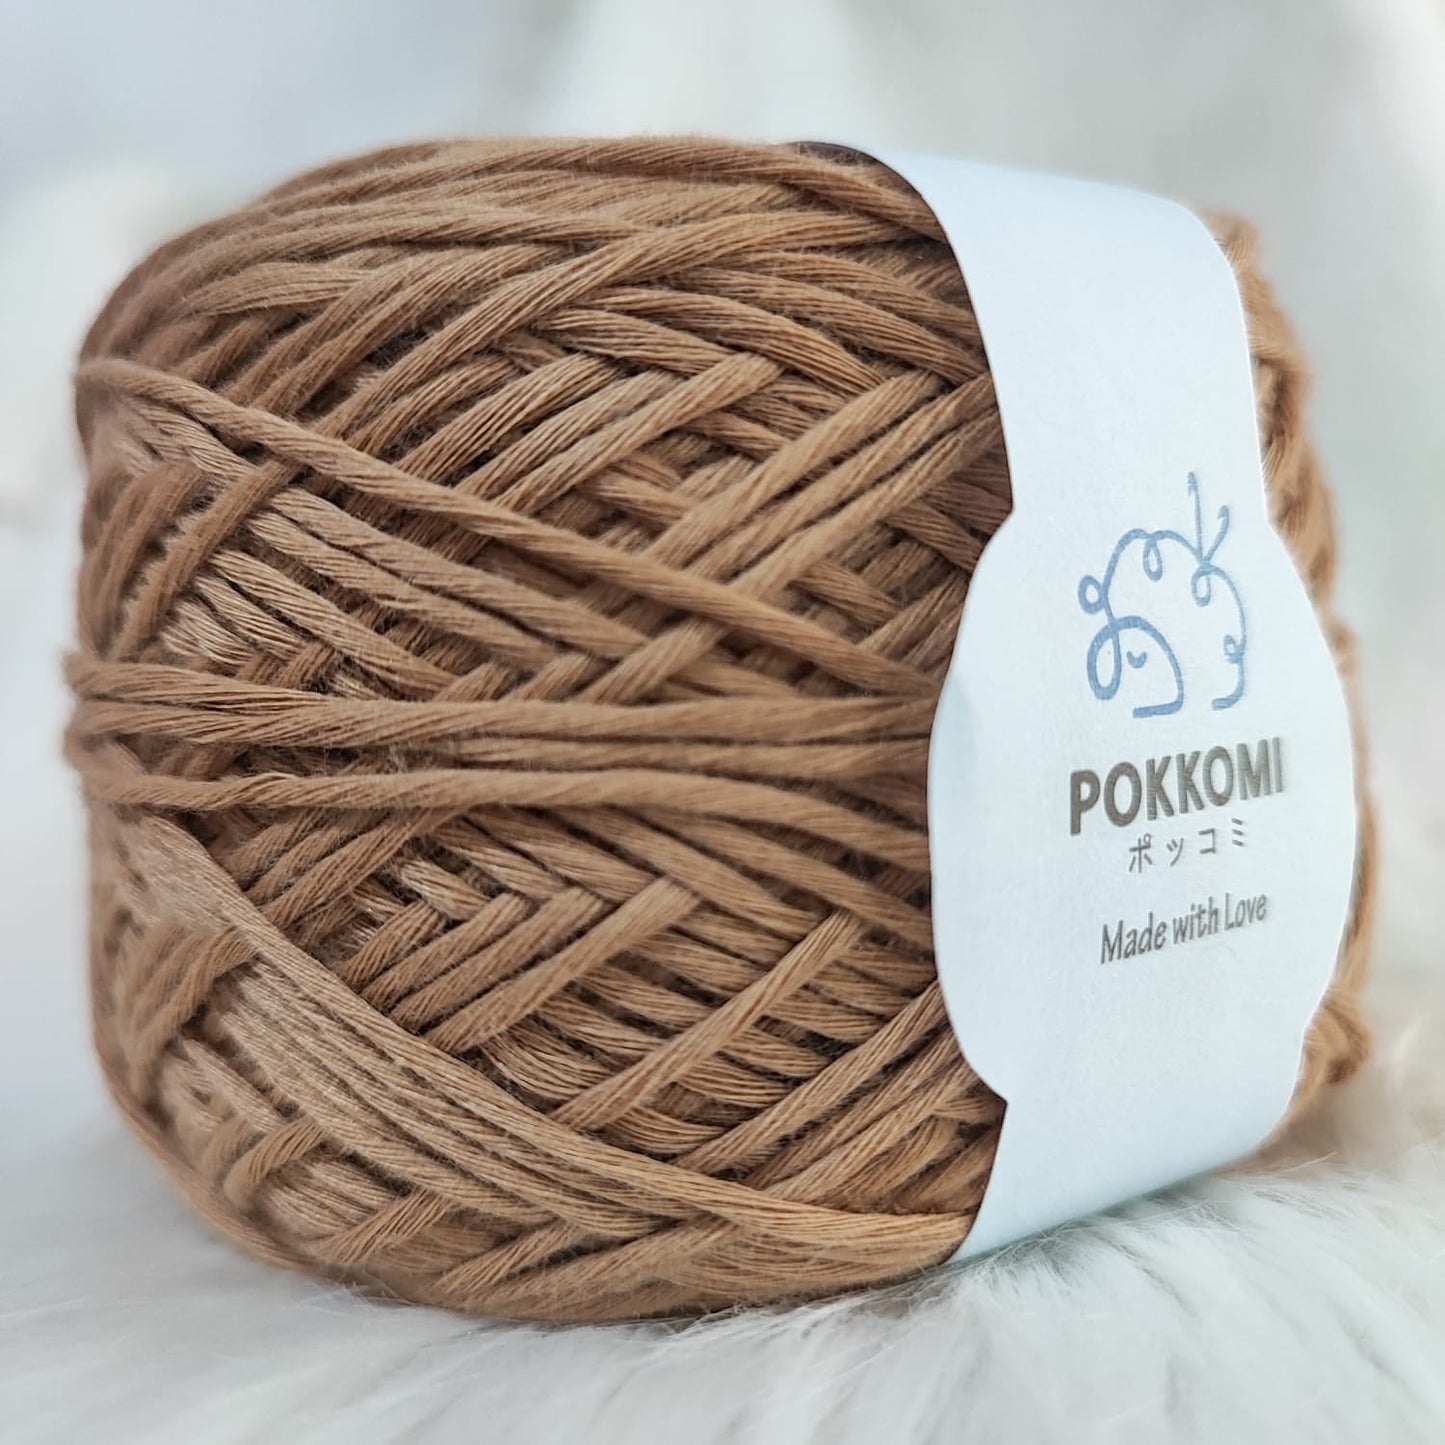 Pokkomi: Combed Cotton (Solid Colour)